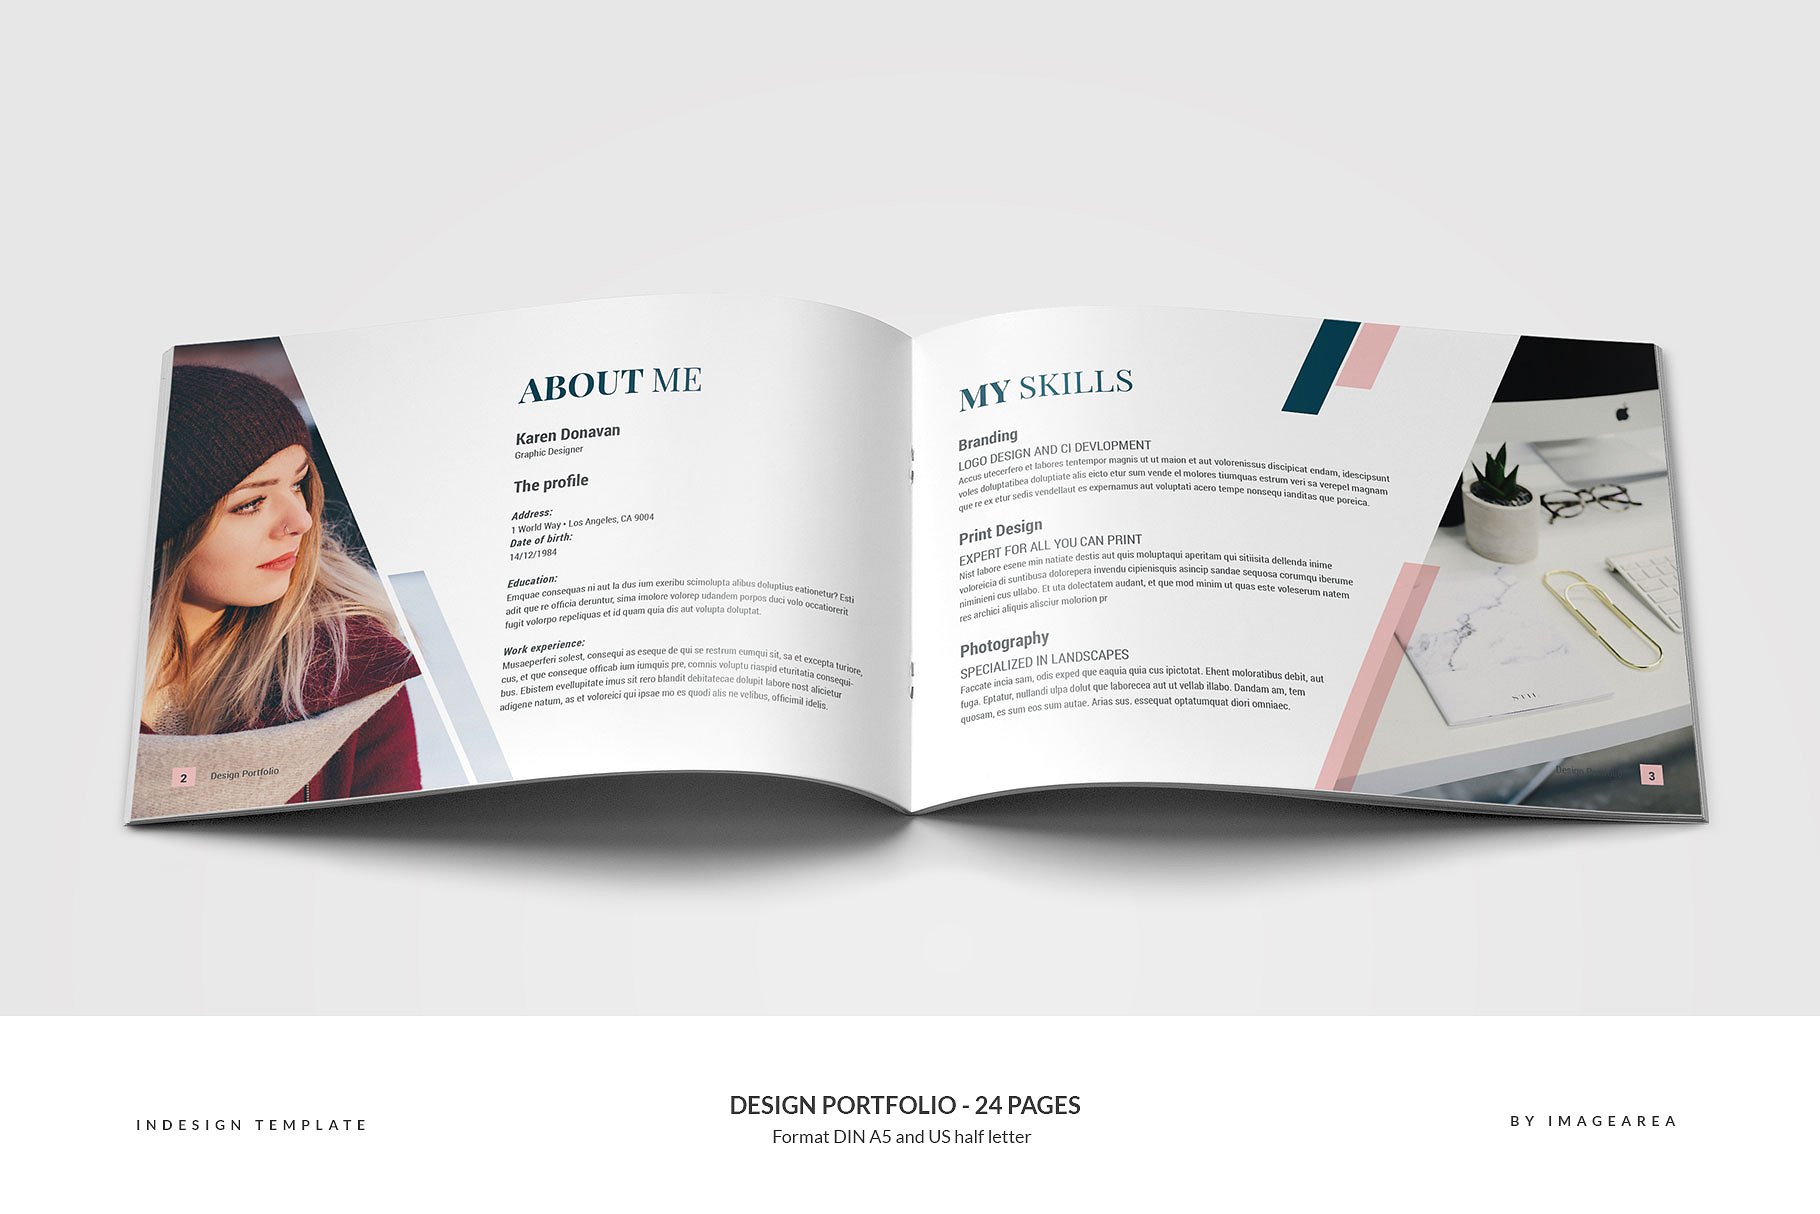 时尚简约企业画册模板 Design Portfolio – 24 Pages插图(1)